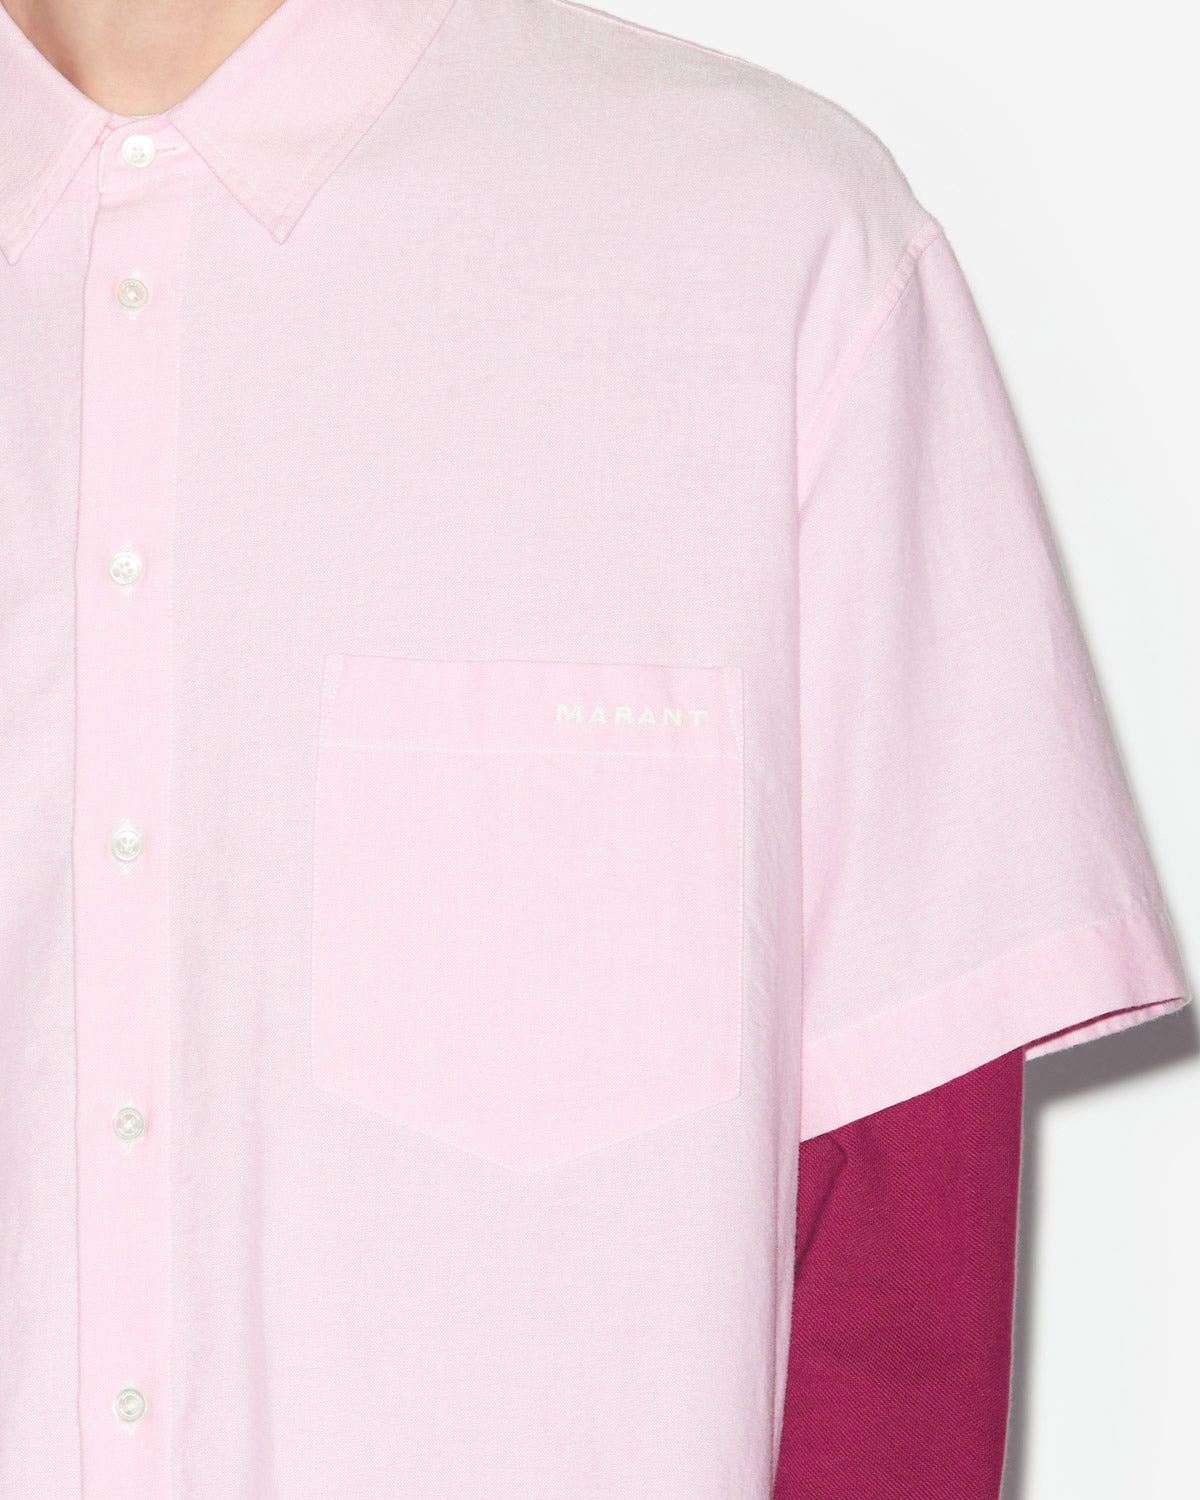 이기(iggy) 셔츠 Man Light pink 2